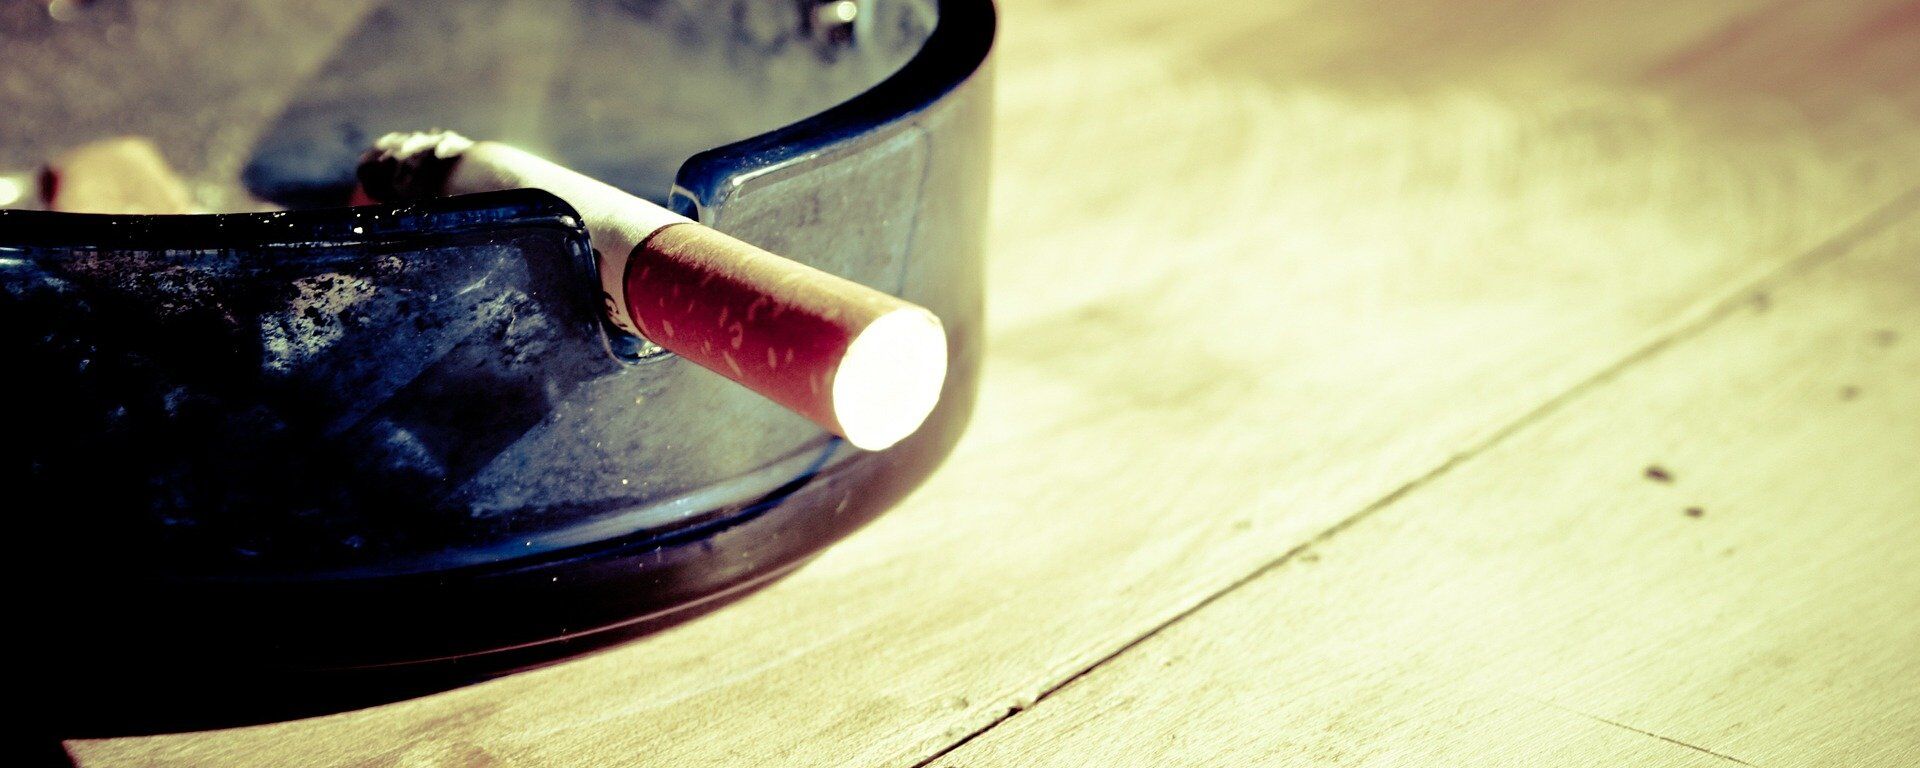 Пепельница с сигаретой, архивное фото - Sputnik Lietuva, 1920, 22.03.2020